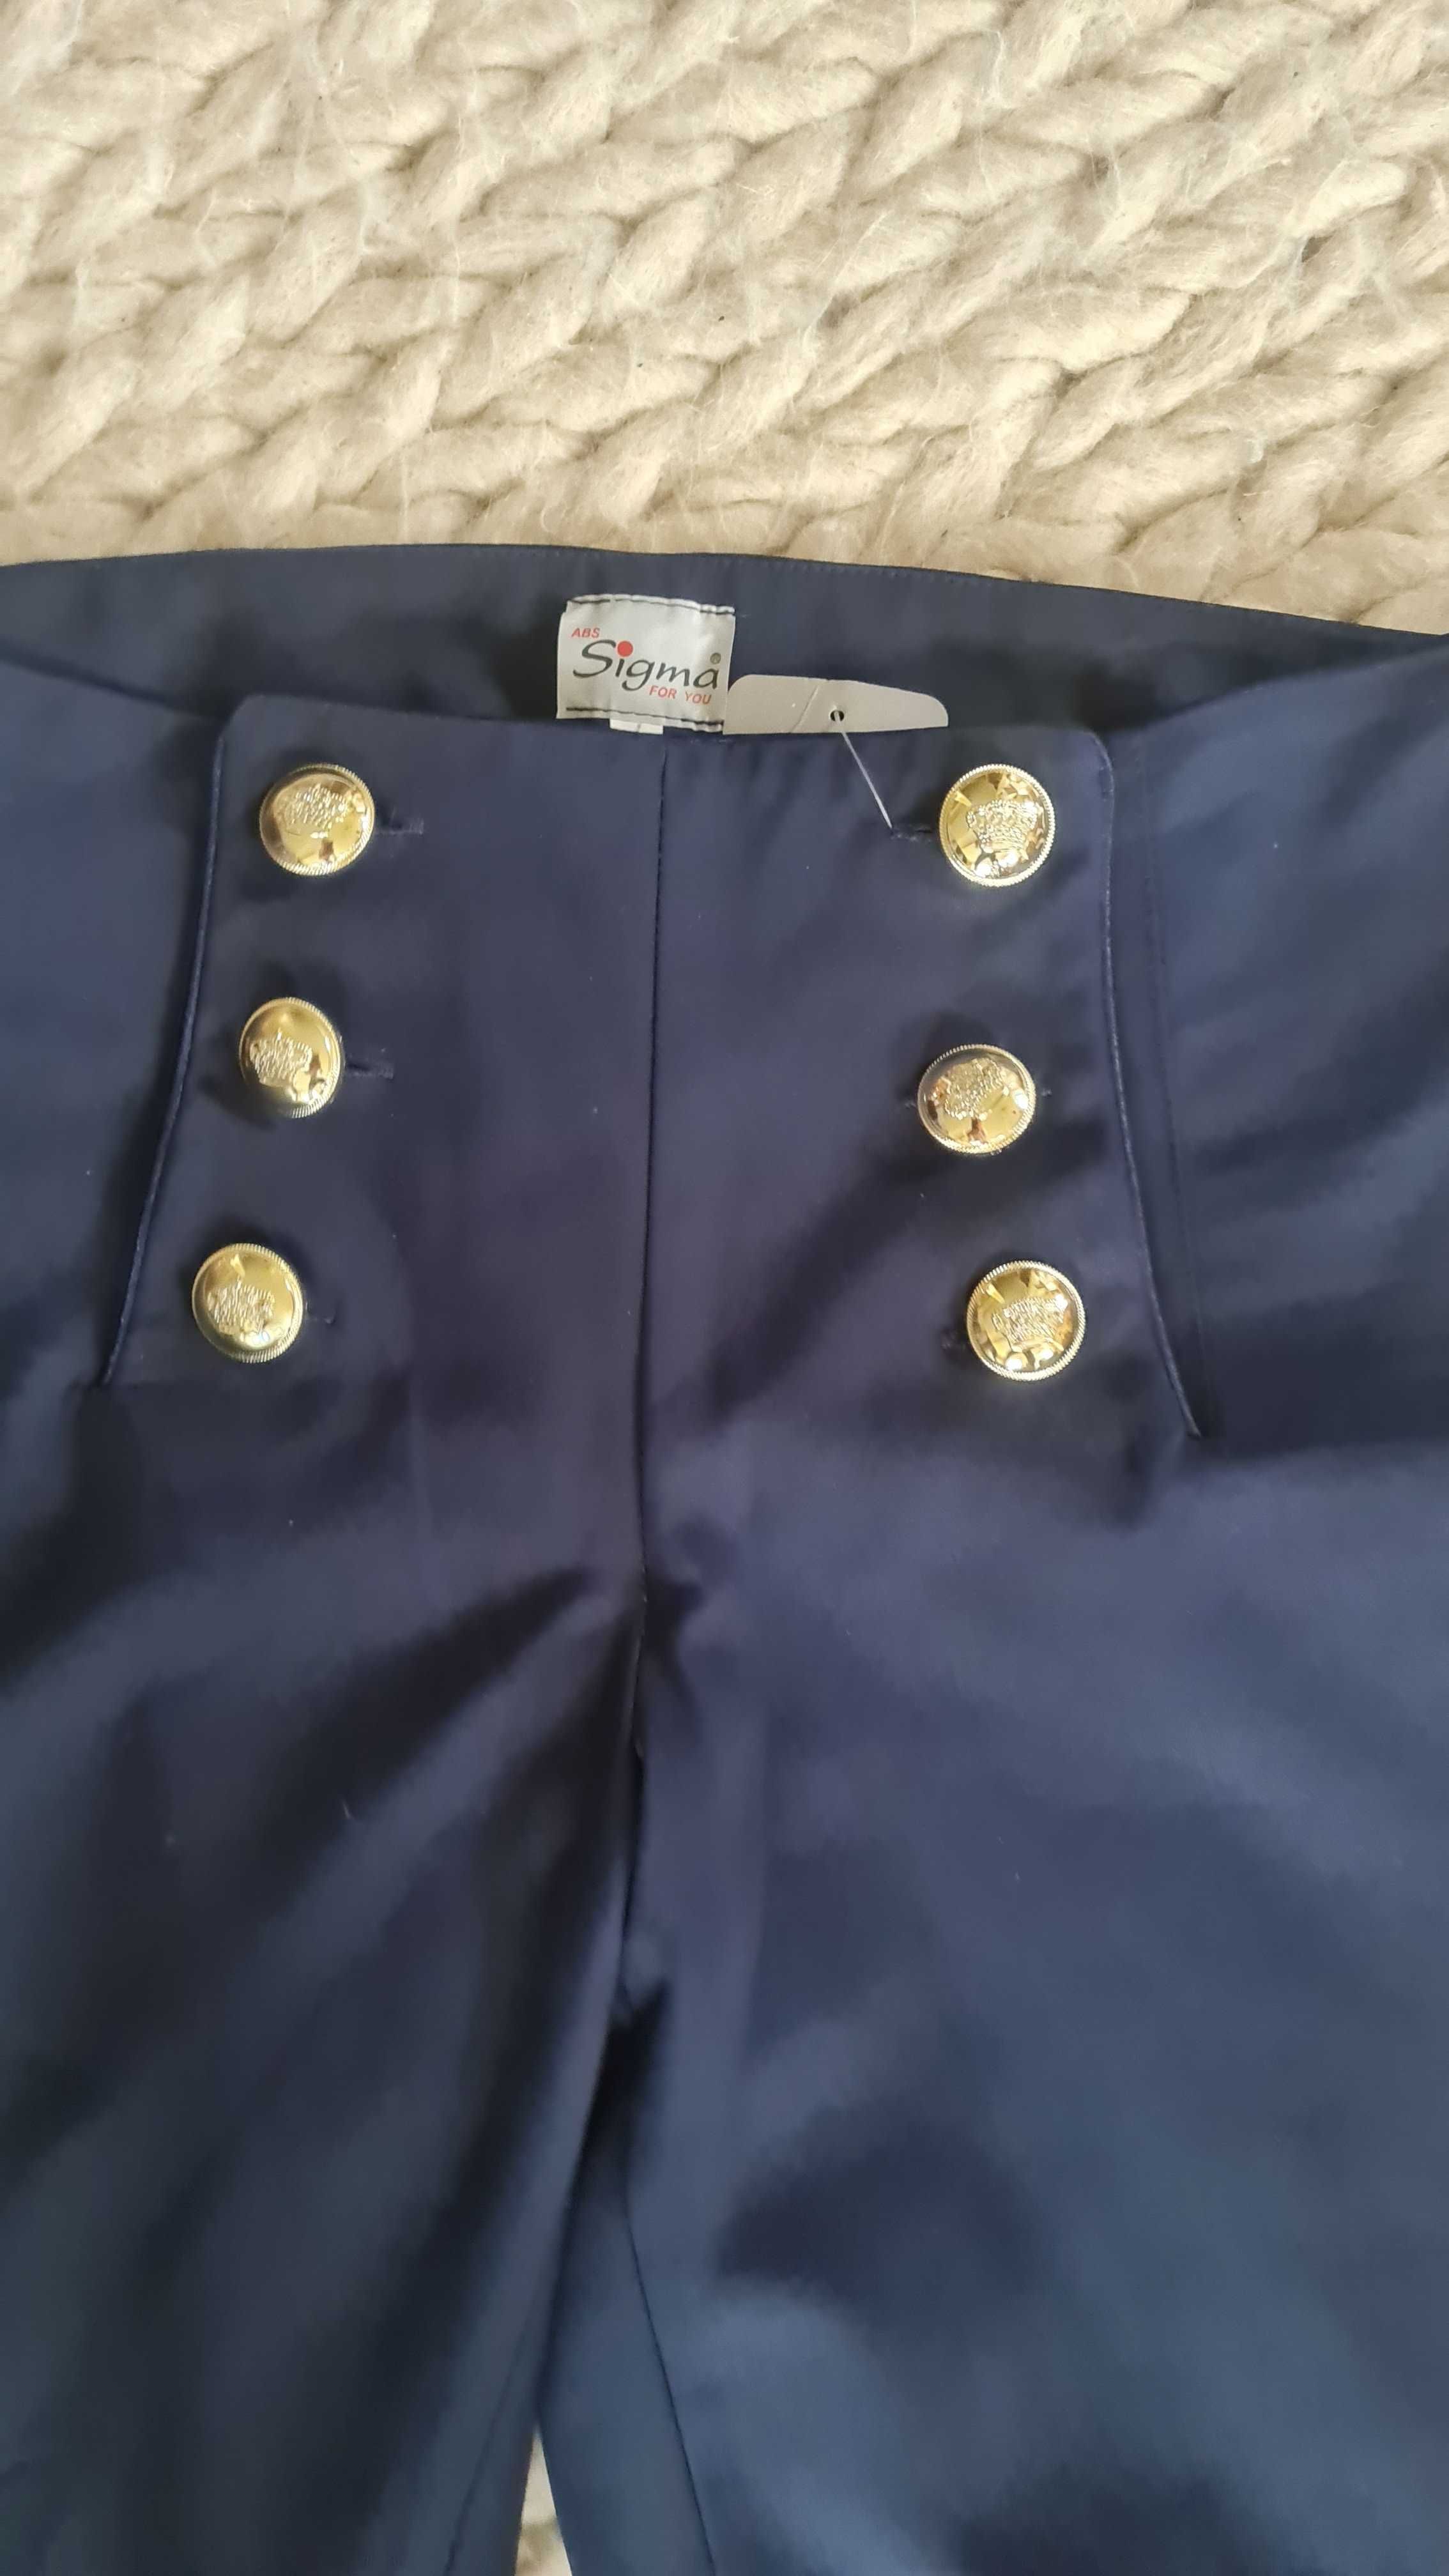 Spodnie Sigma ze złotymi guzikami.